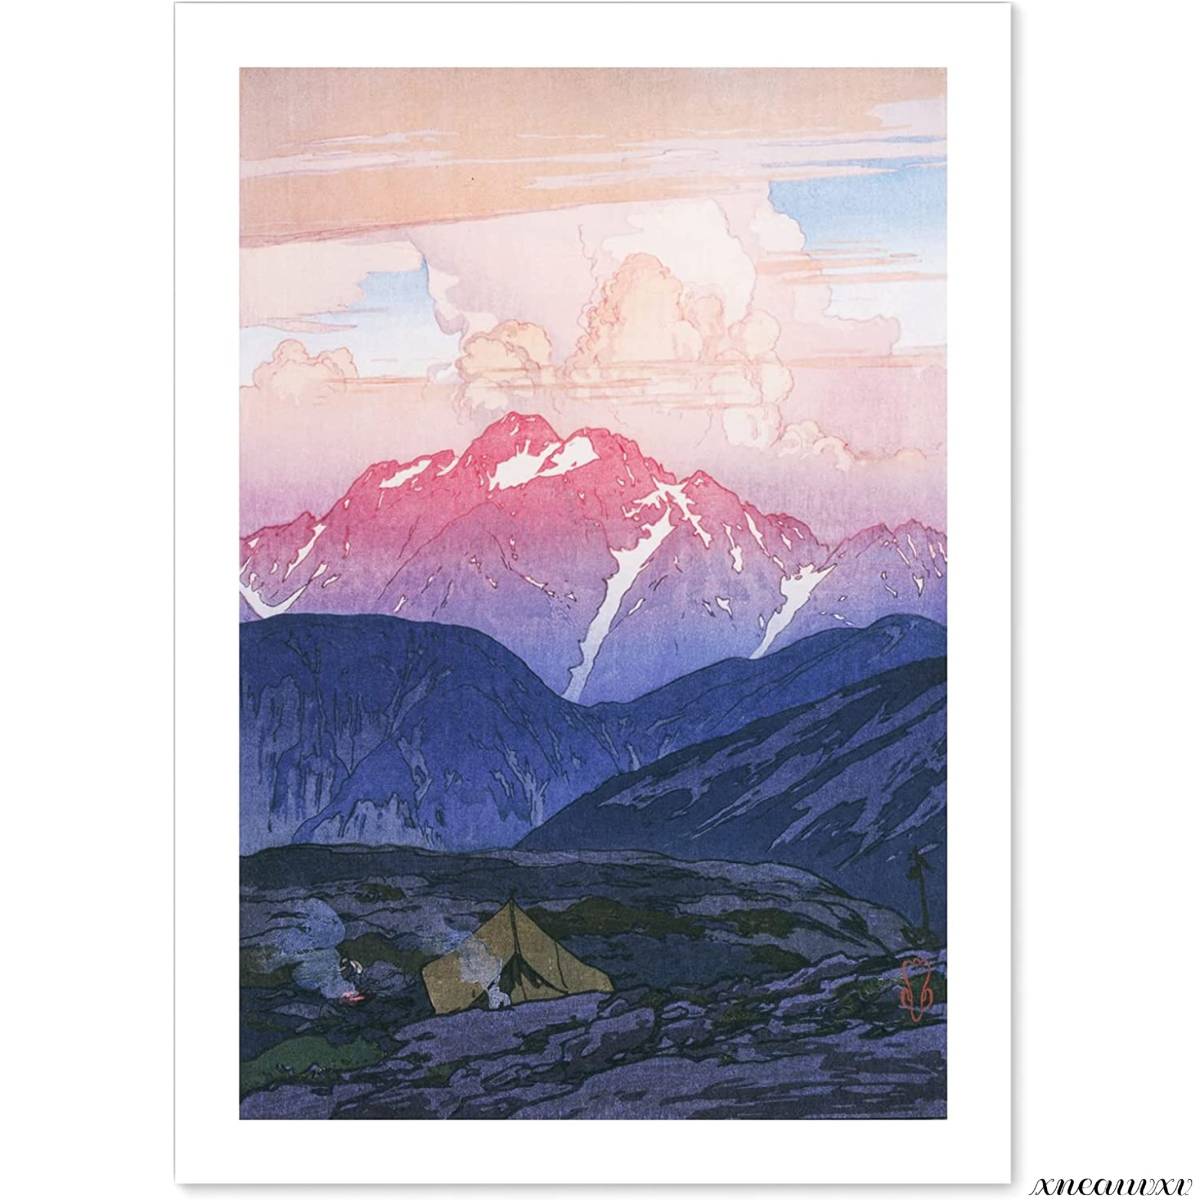 吉田博 日本阿尔卑斯山十二主题早晨剑山(日本画)印刷品日本制造 A3 尺寸复制画山水画室内壁挂房间装饰装饰画海报, 绘画, 浮世绘, 打印, 其他的